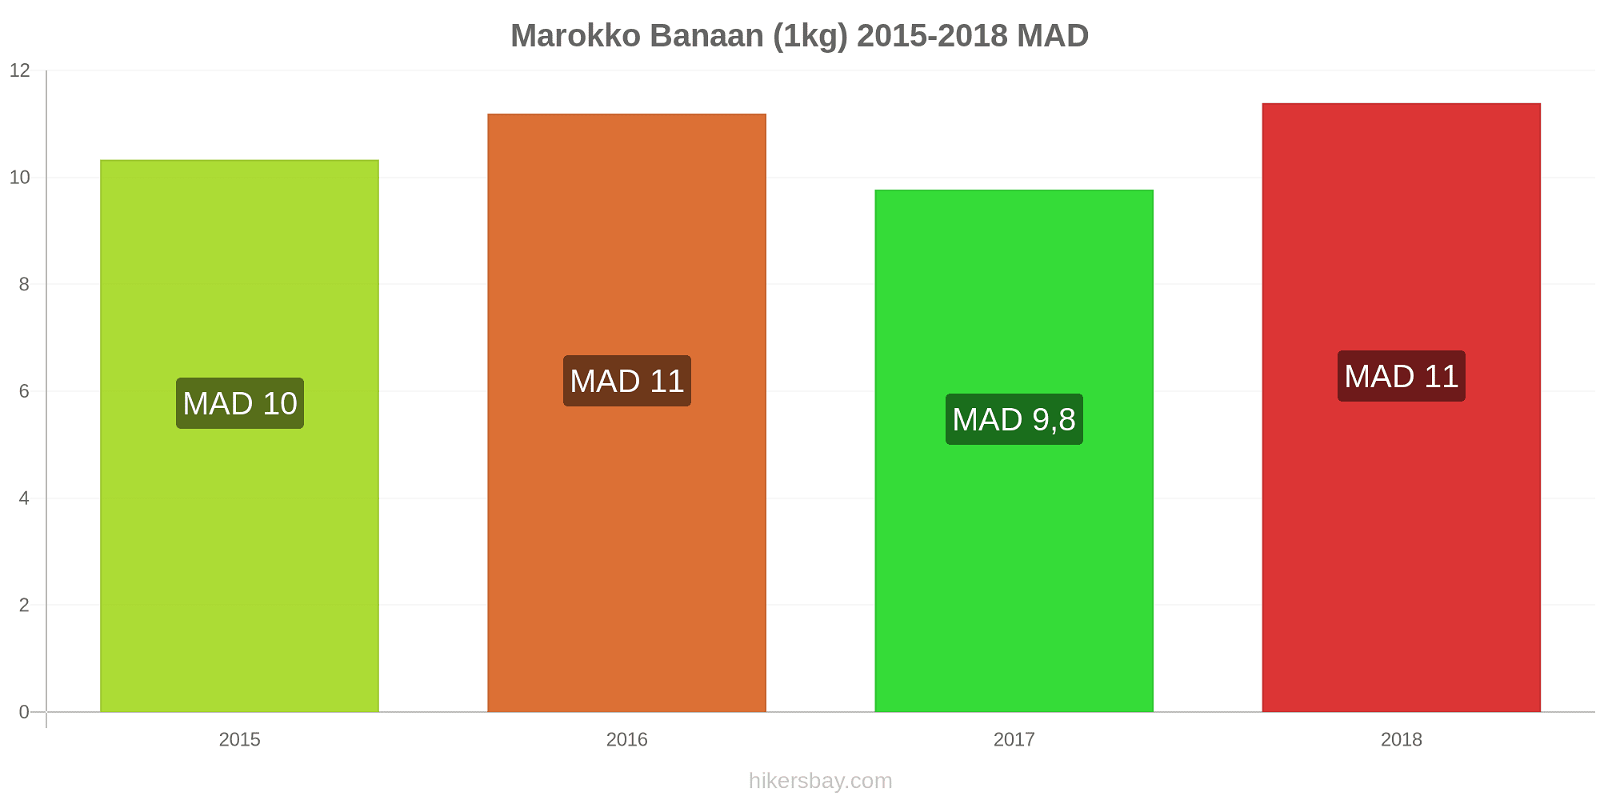 Marokko prijswijzigingen Bananen (1kg) hikersbay.com